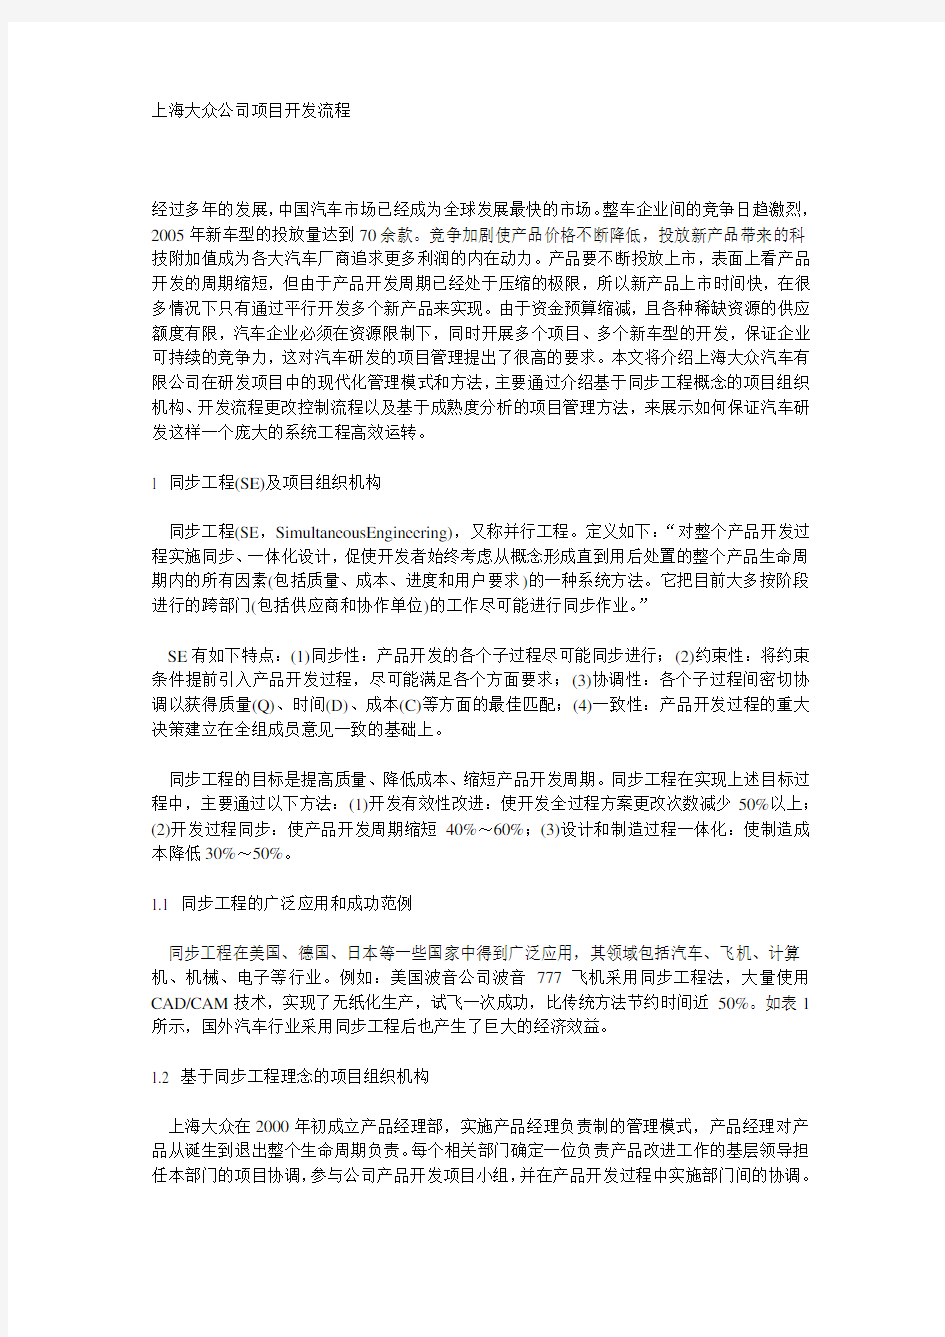 上海大众公司项目开发流程